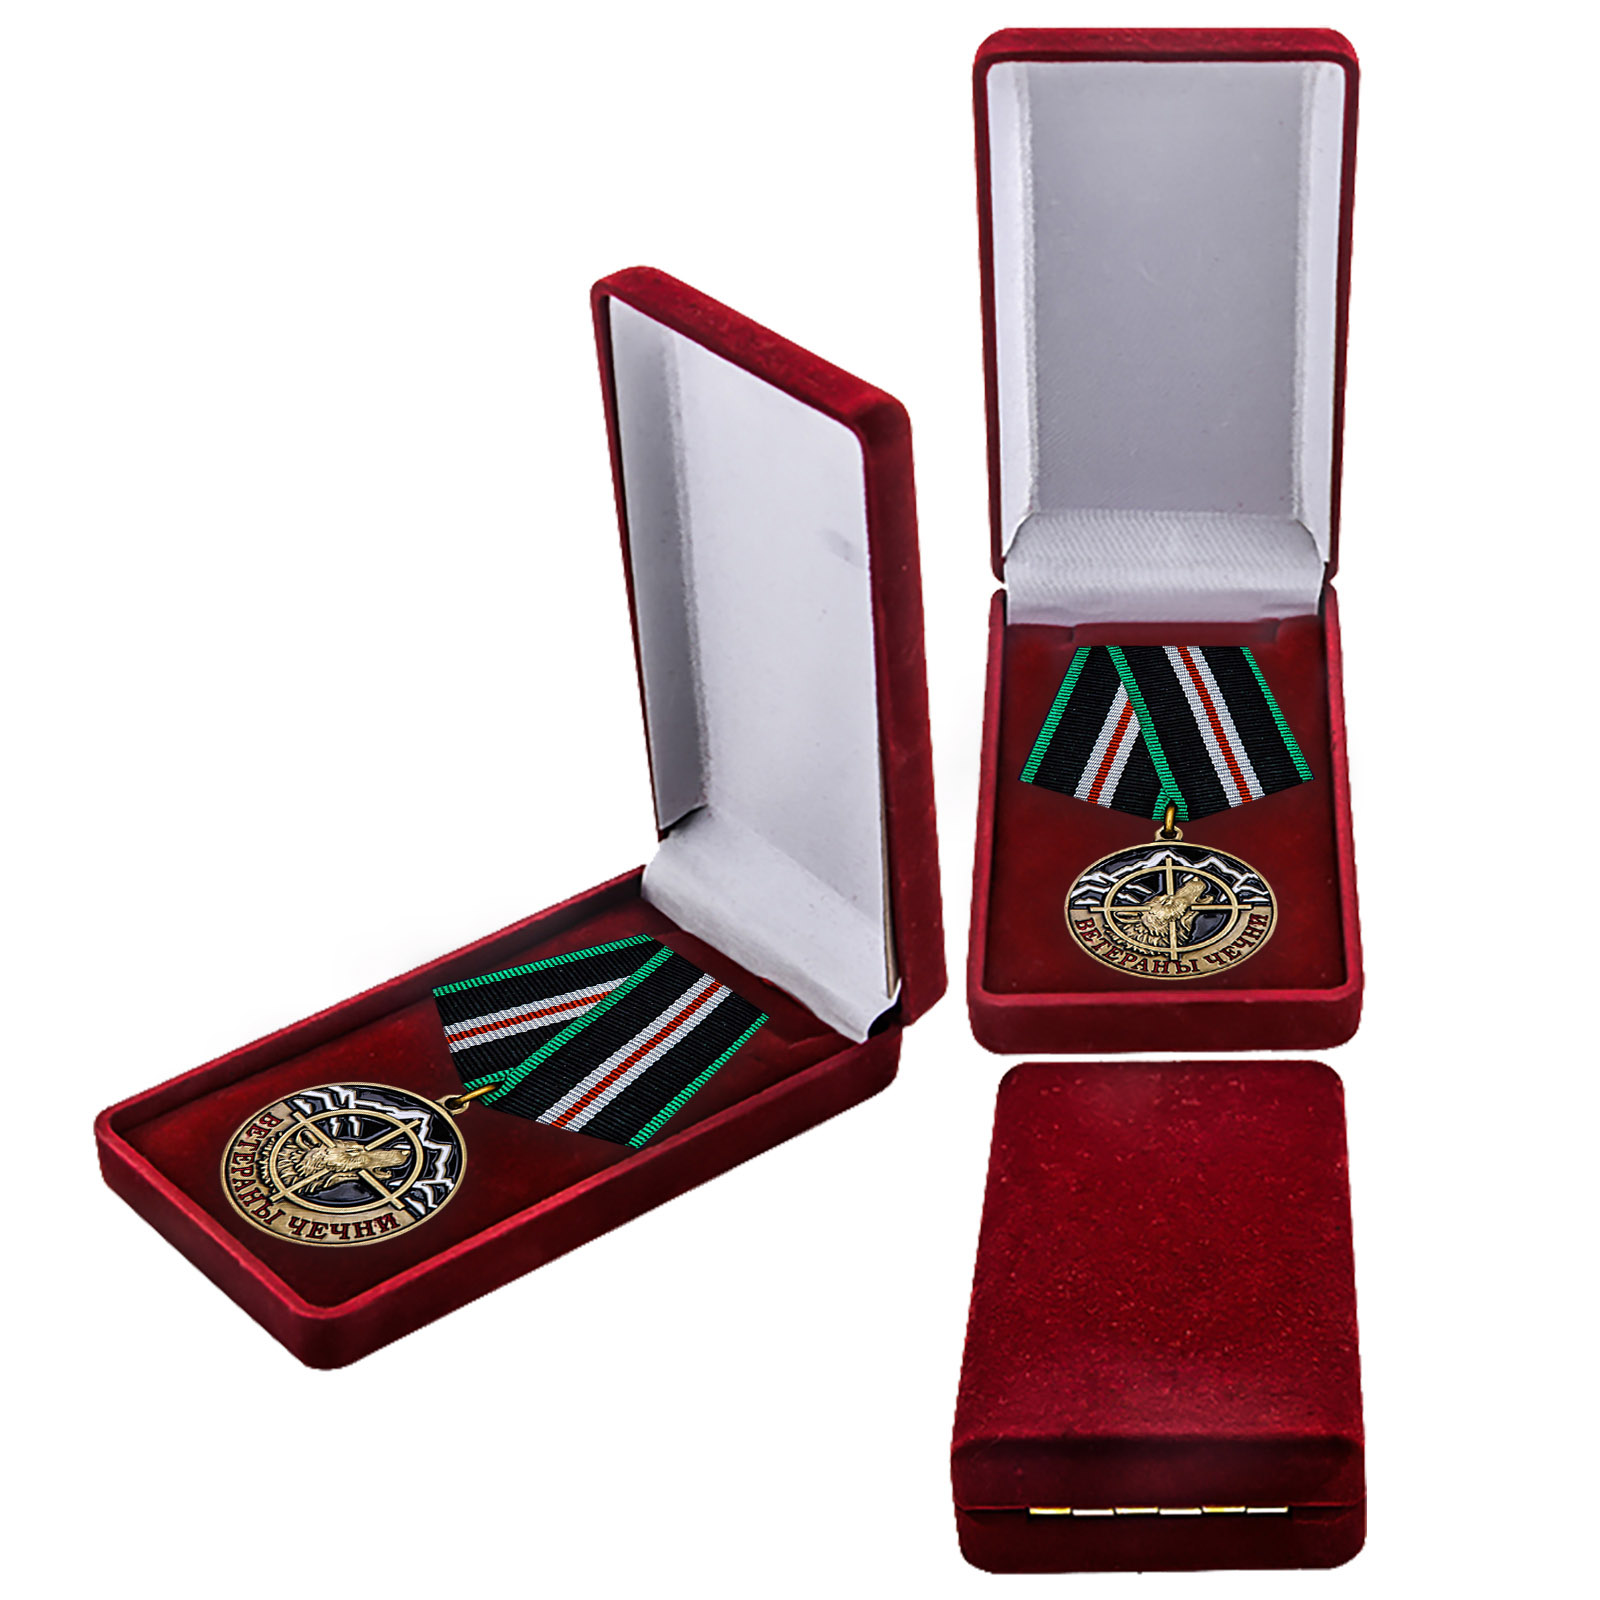 Купить памятную медаль Ветераны Чечни оптом или вы розницу